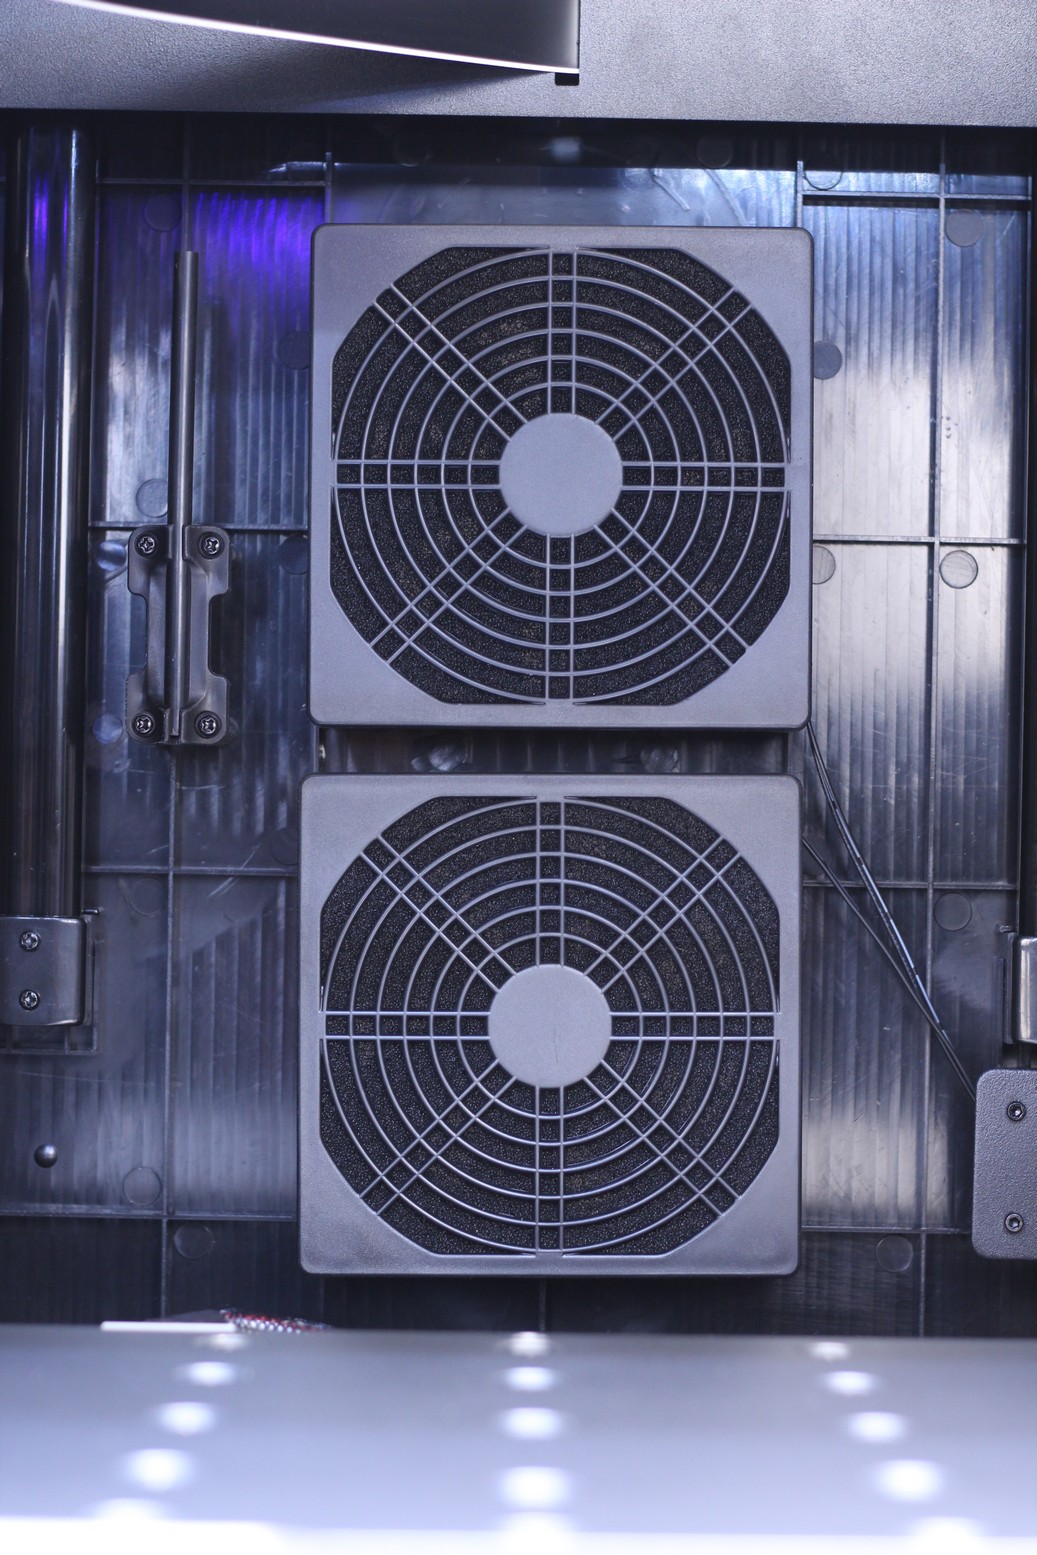 QIDI X MAX enclosure fans with filters | QIDI X-MAX Review: Enclosed High-Temperature 3D Printer